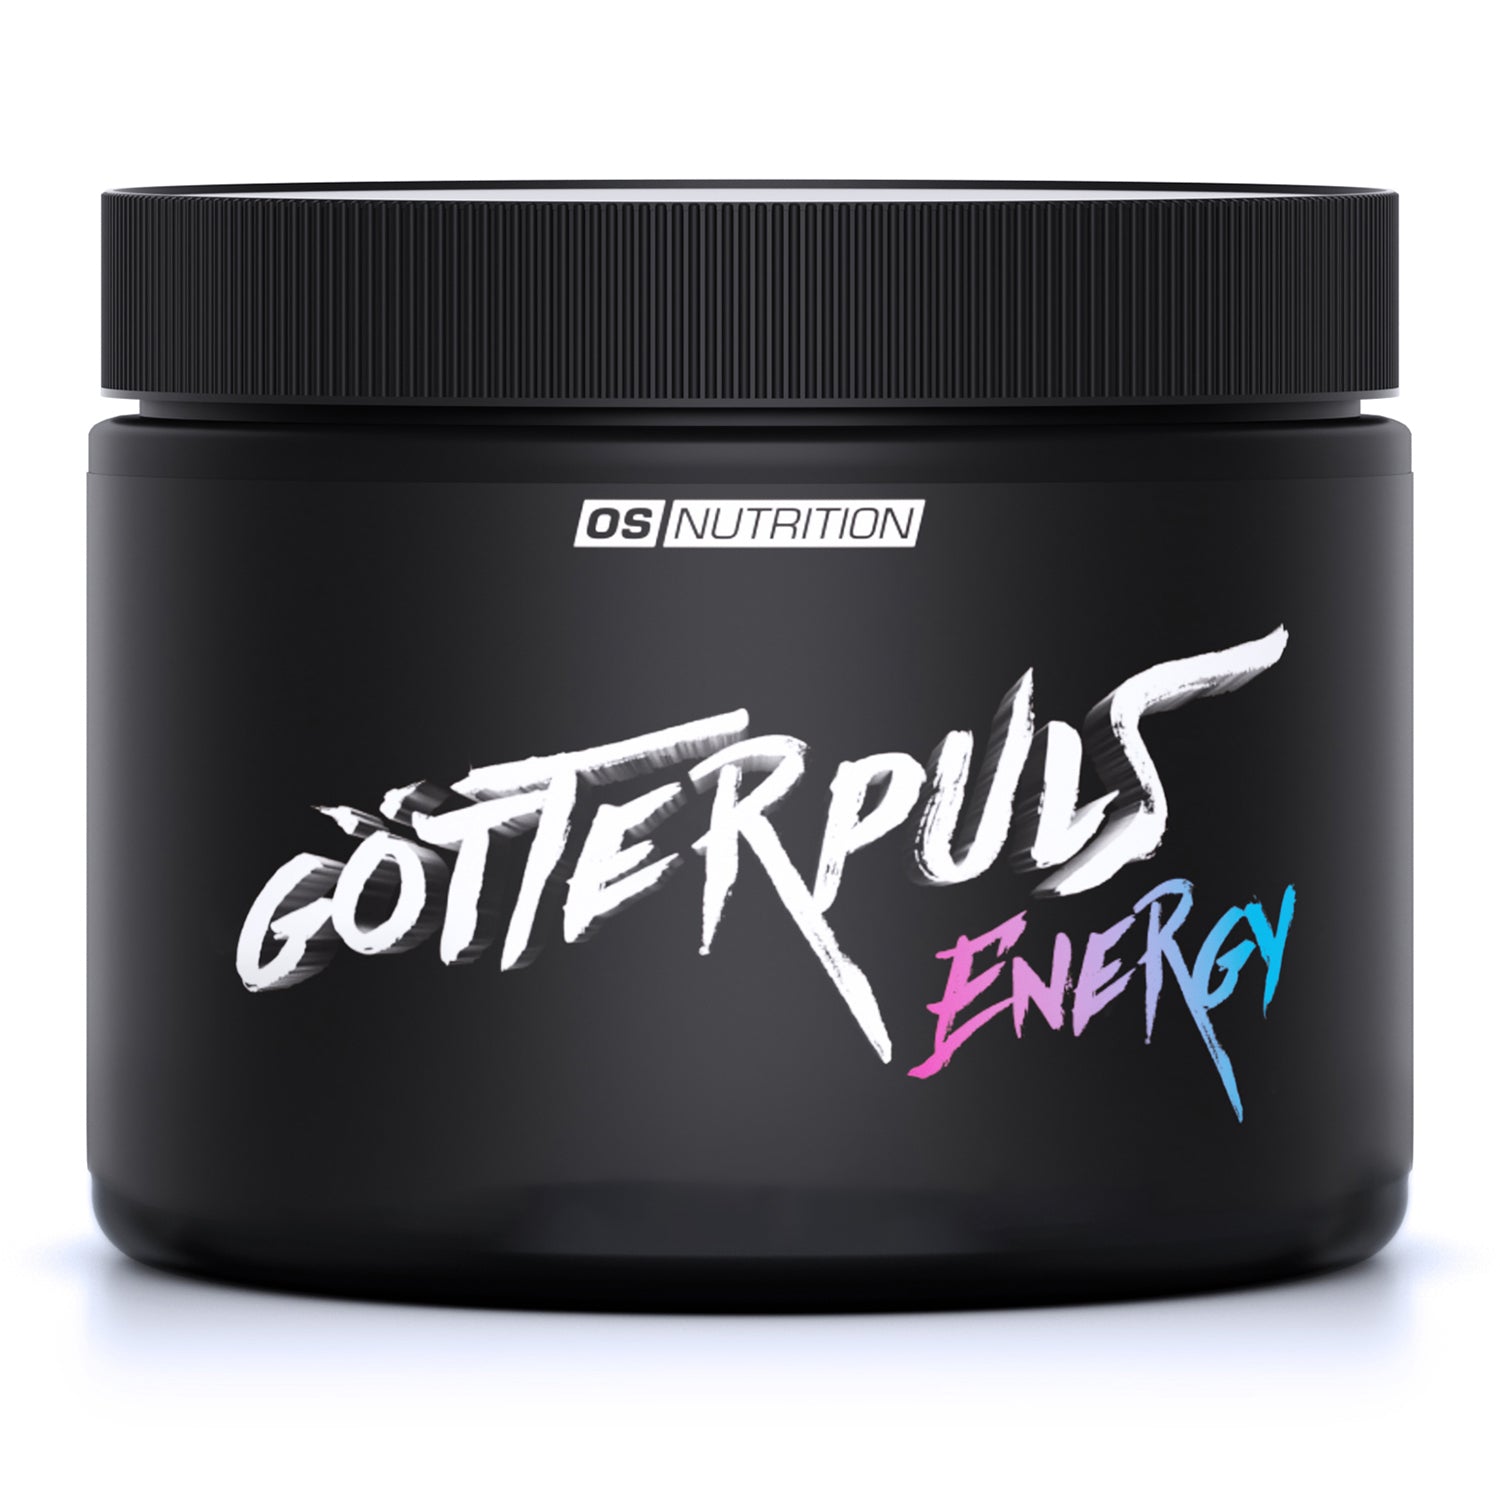 Götterpuls® Energy 270 g - OS NUTRITION